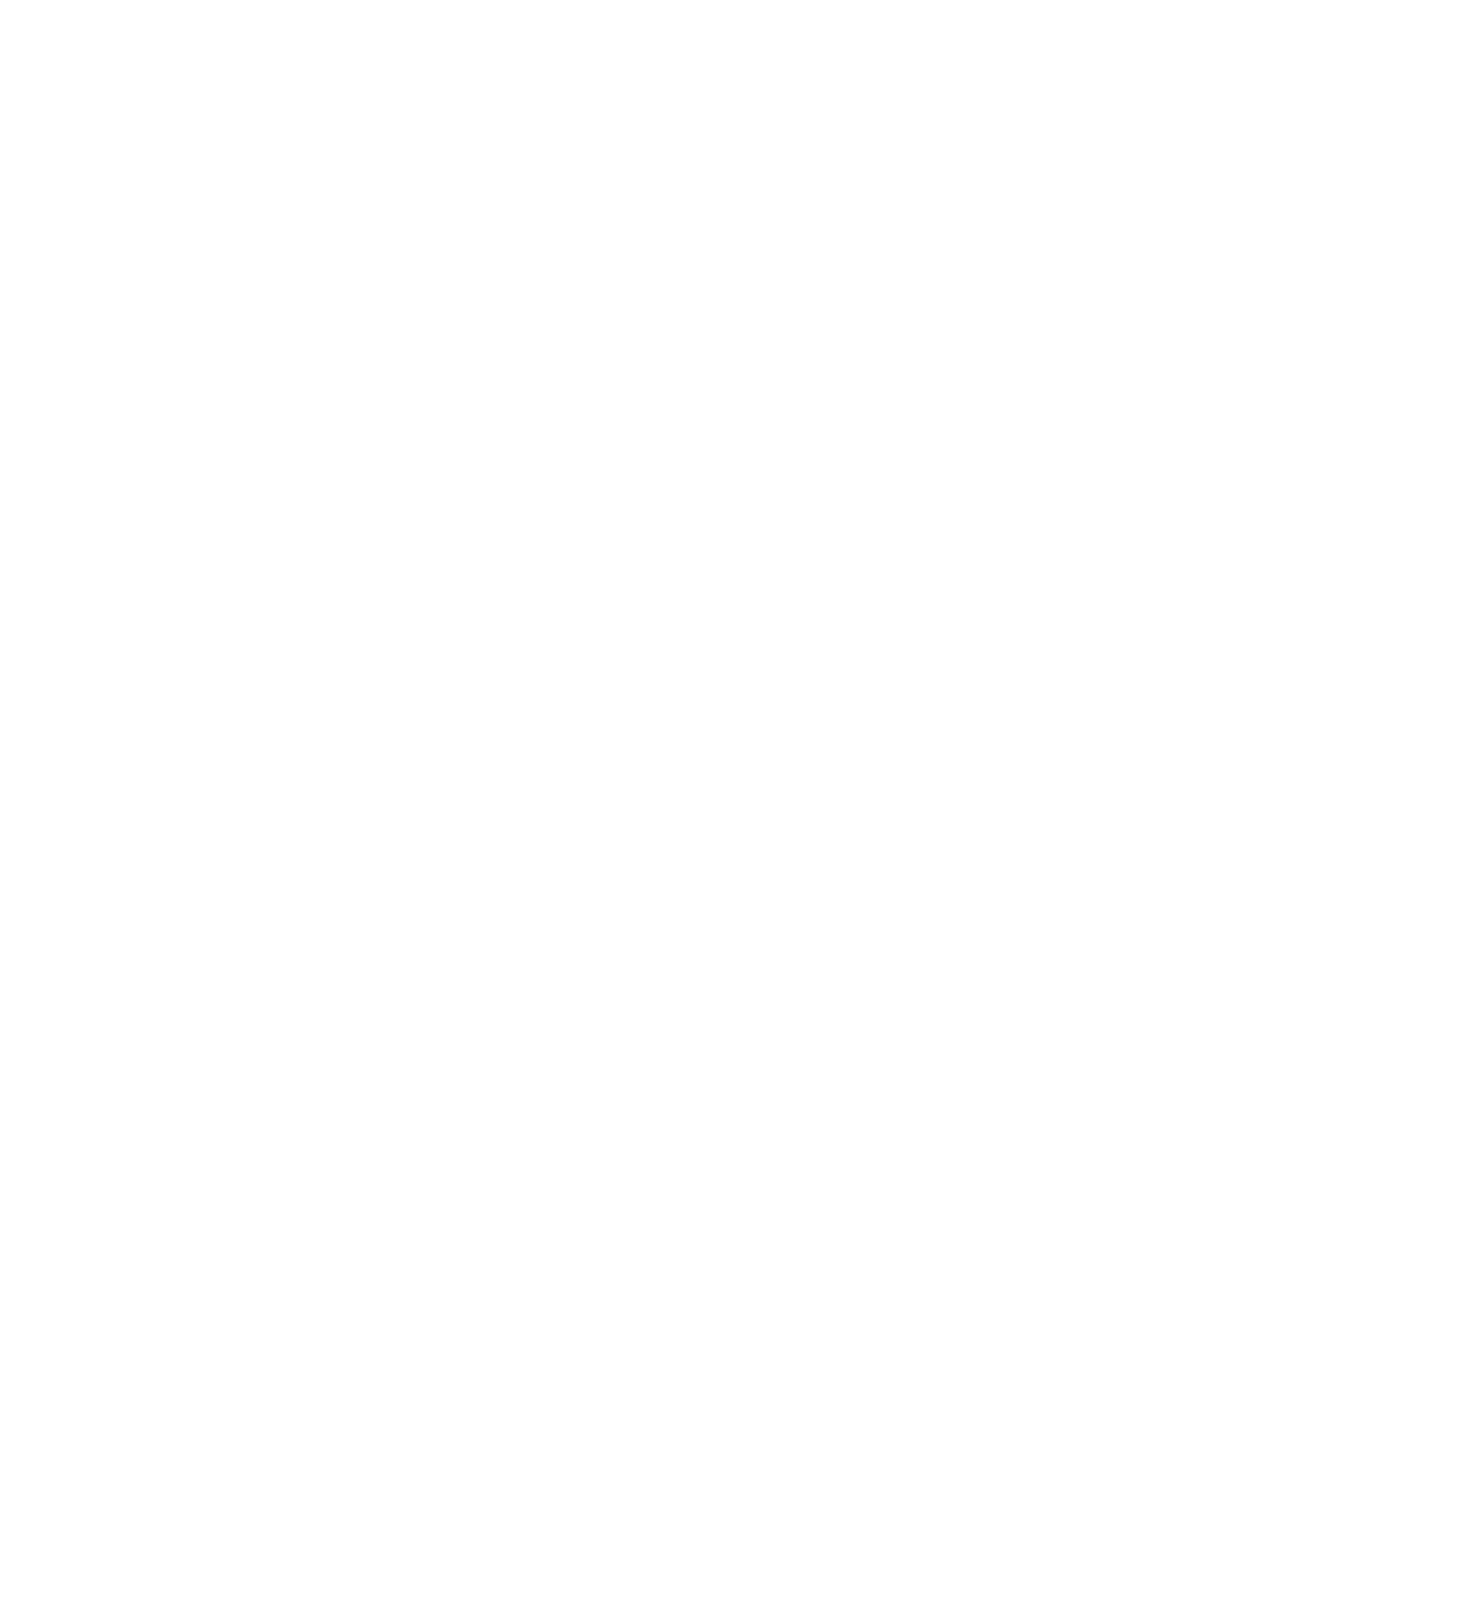 Tidal ETF Trust logo for dark backgrounds (transparent PNG)